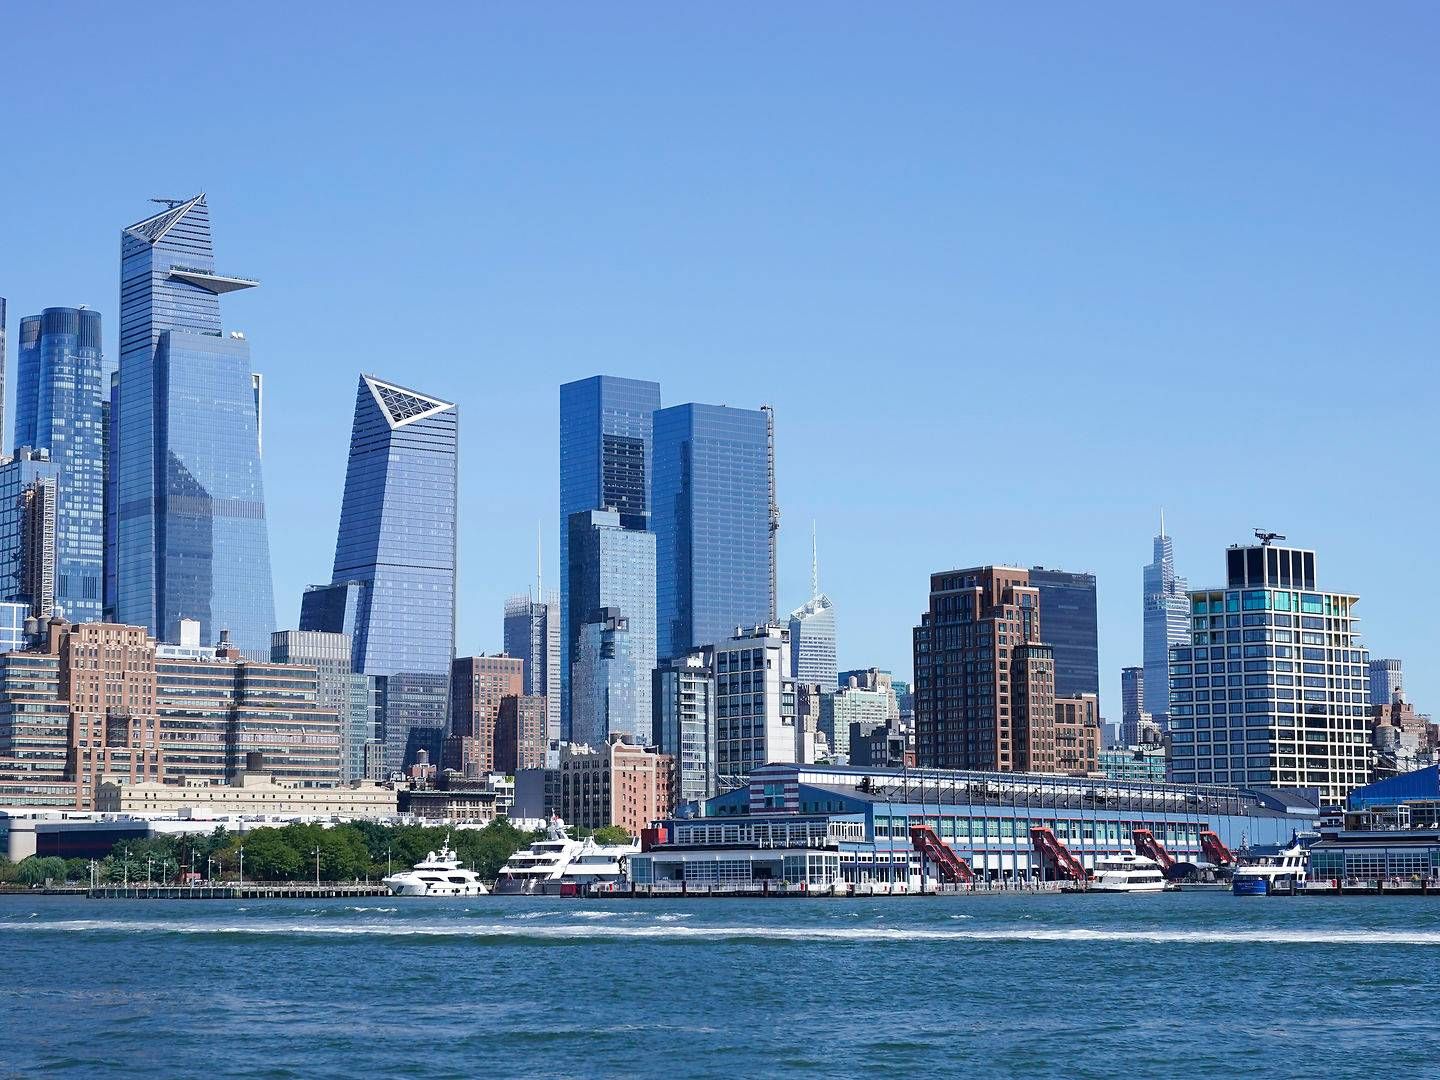 Globale advokatfirmaer i blandt andet New York oplever faldende efterspørgsel. | Foto: Seth Wenig/AP/Ritzau Scanpix